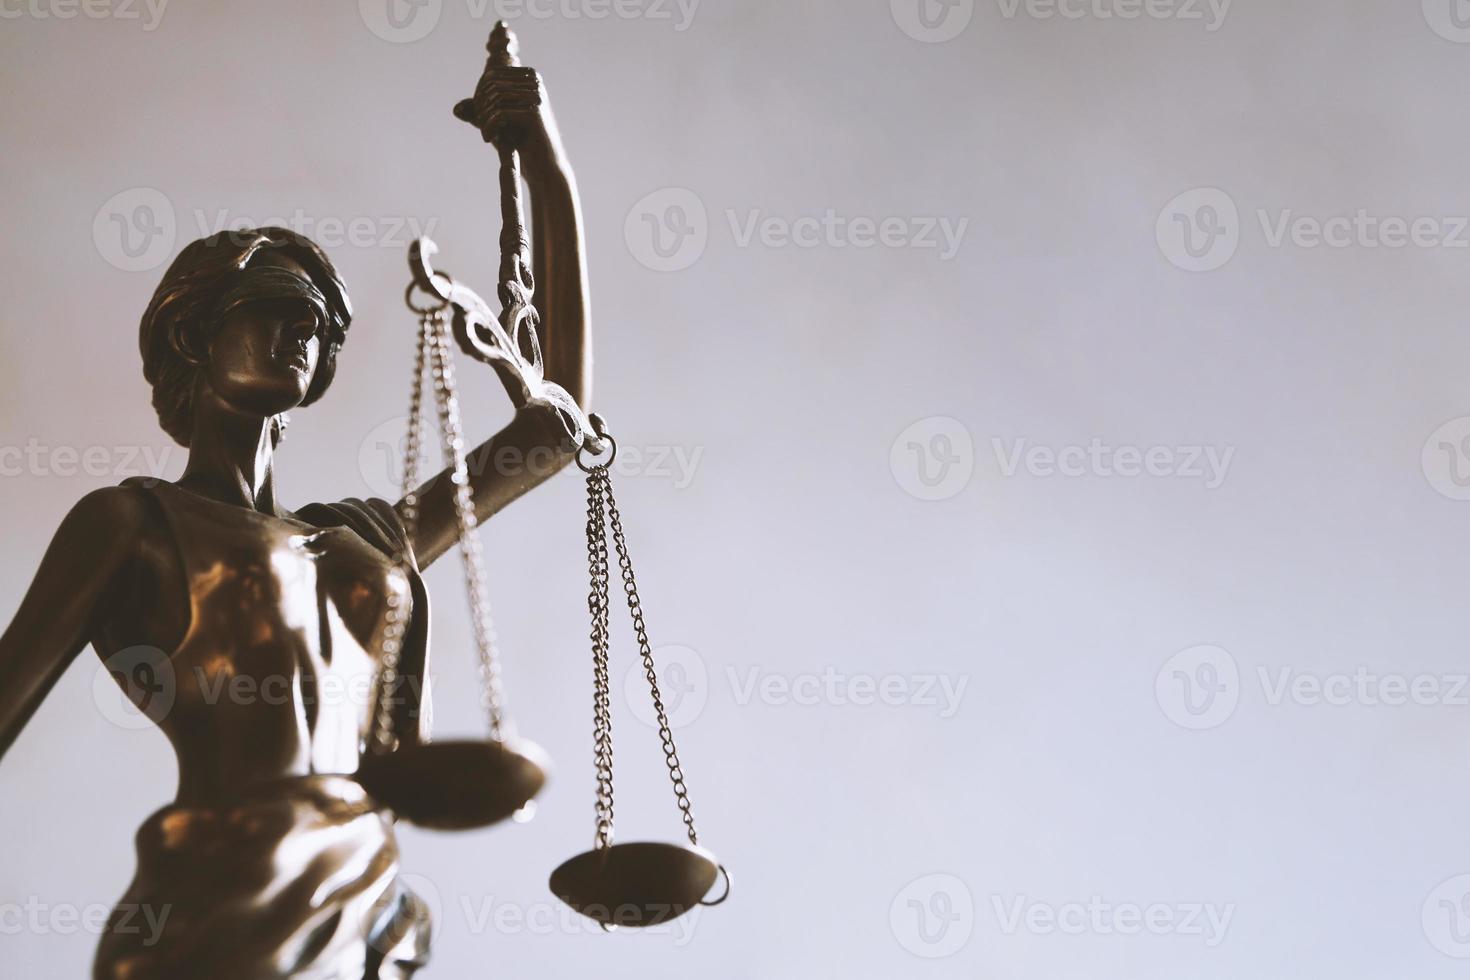 senhora justiça ou estatueta justitia - símbolo de lei e jurisprudência foto